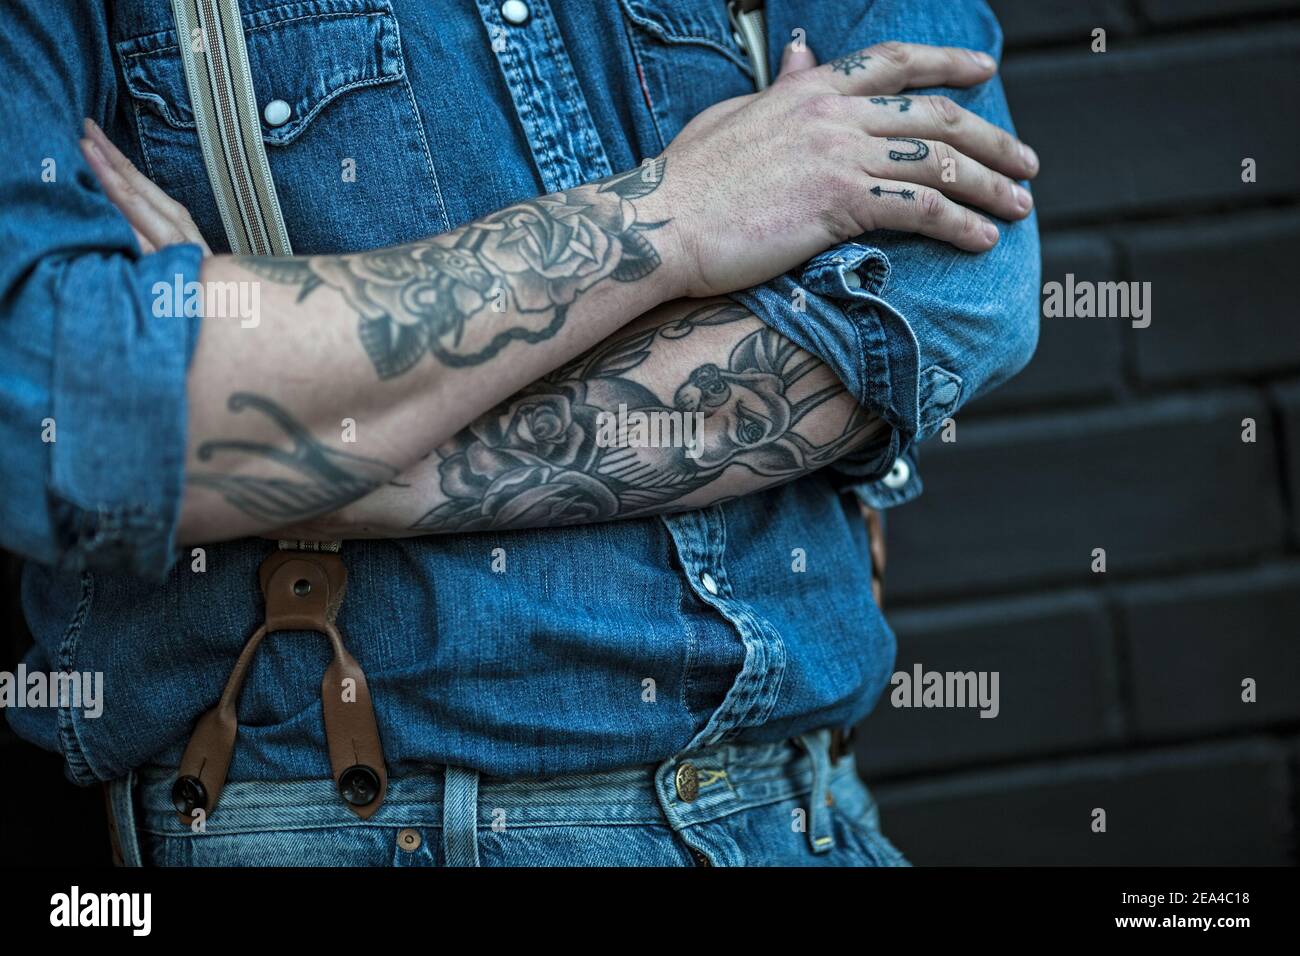 homme avec tatouages portant un jean avec bretelles Banque D'Images